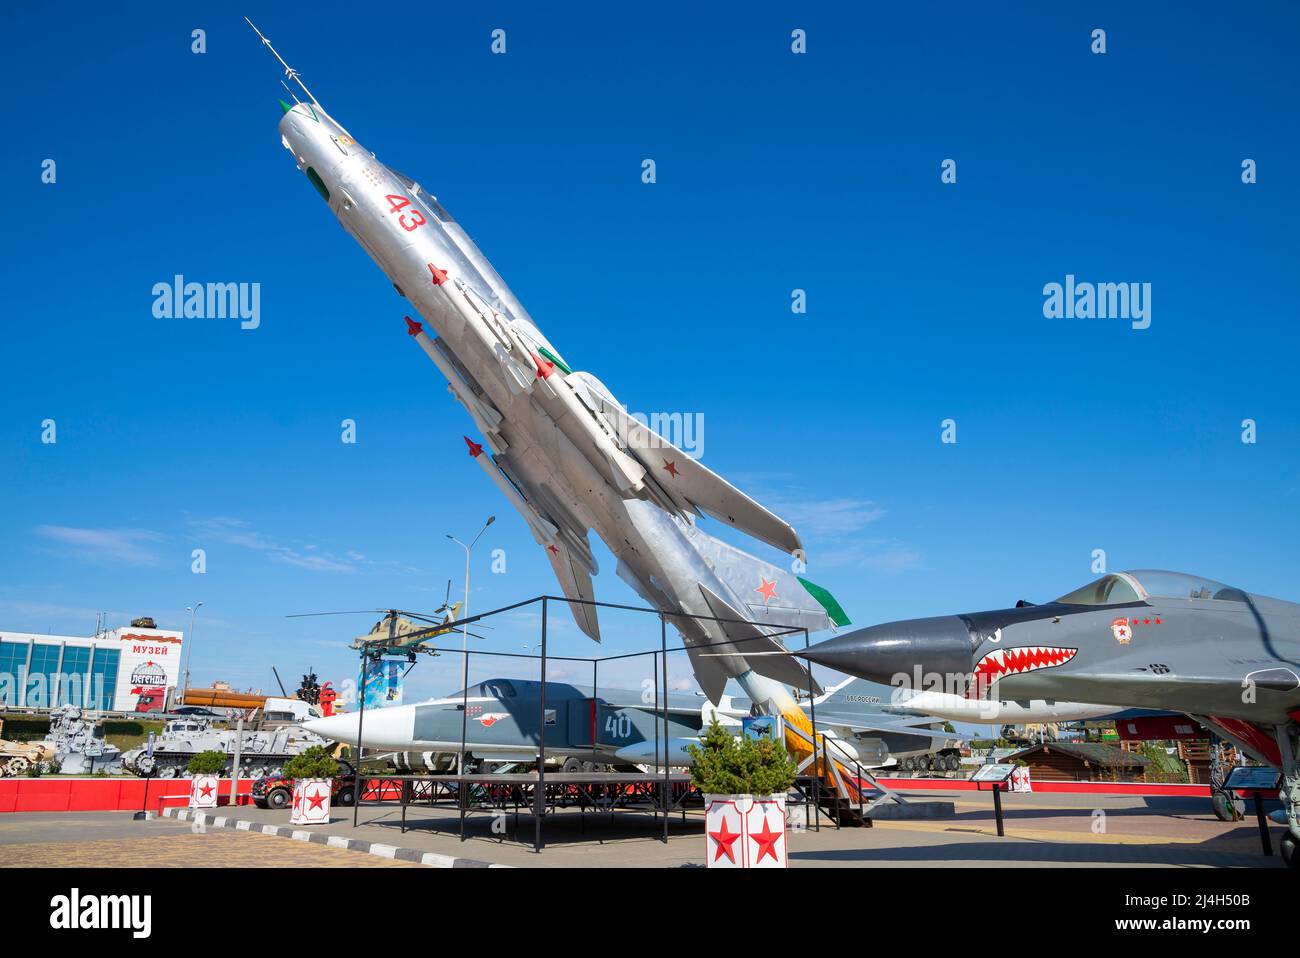 KAMENSK-SHAKHTINSKY, RUSSIE - 04 OCTOBRE 2021 : SU-17 - chasseur-bombardier soviétique dans l'exposition du parc Patriot. Kamensk-Shakhtinsky Banque D'Images